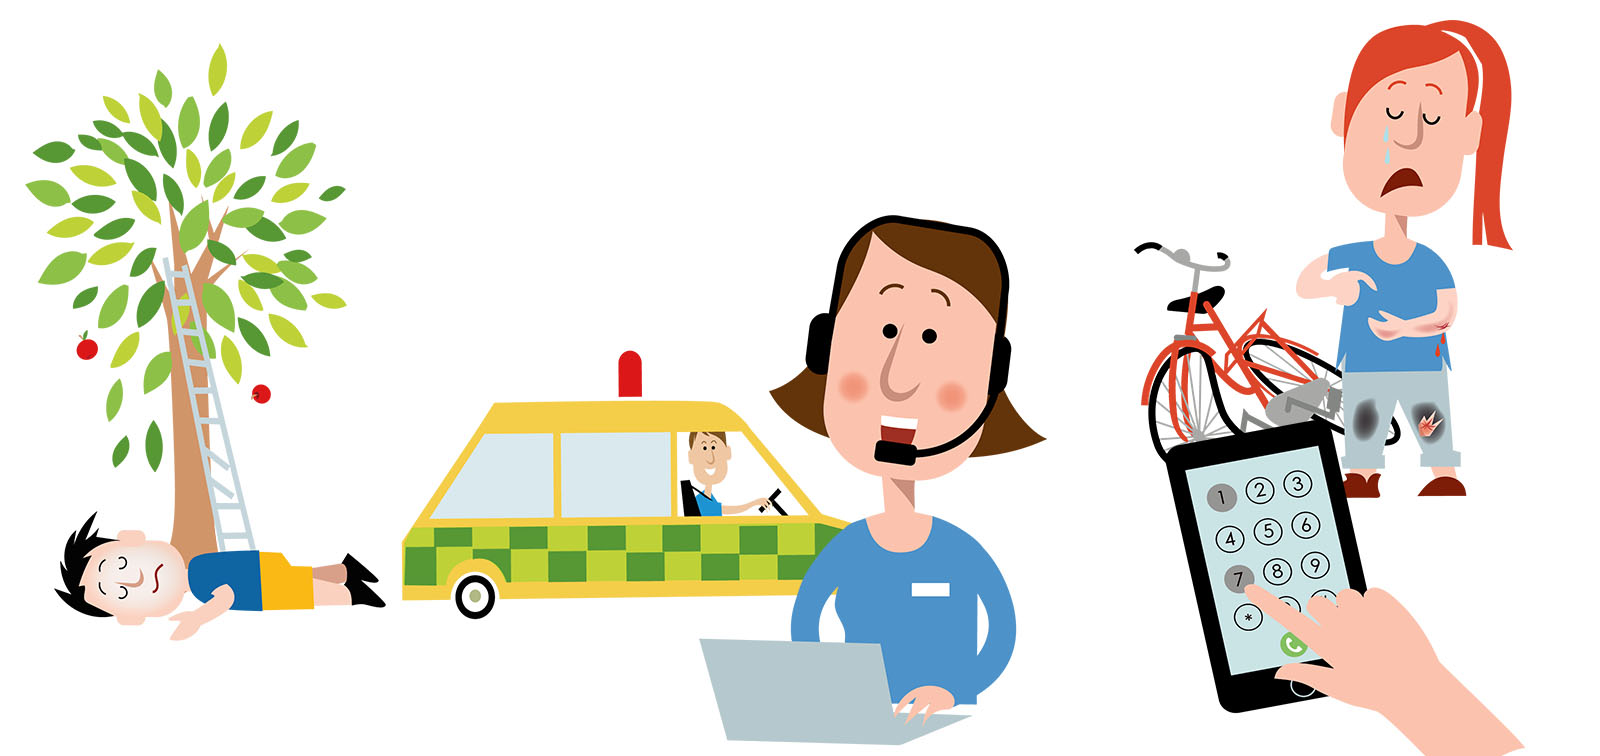 En skadad person som ligger under ett träd med en stege. En ambulans och en rådgivningssjuksköterska. En skadad person med en trasig cykel och en hand som ringer på sin mobiltelefon. Illustration, kollage.